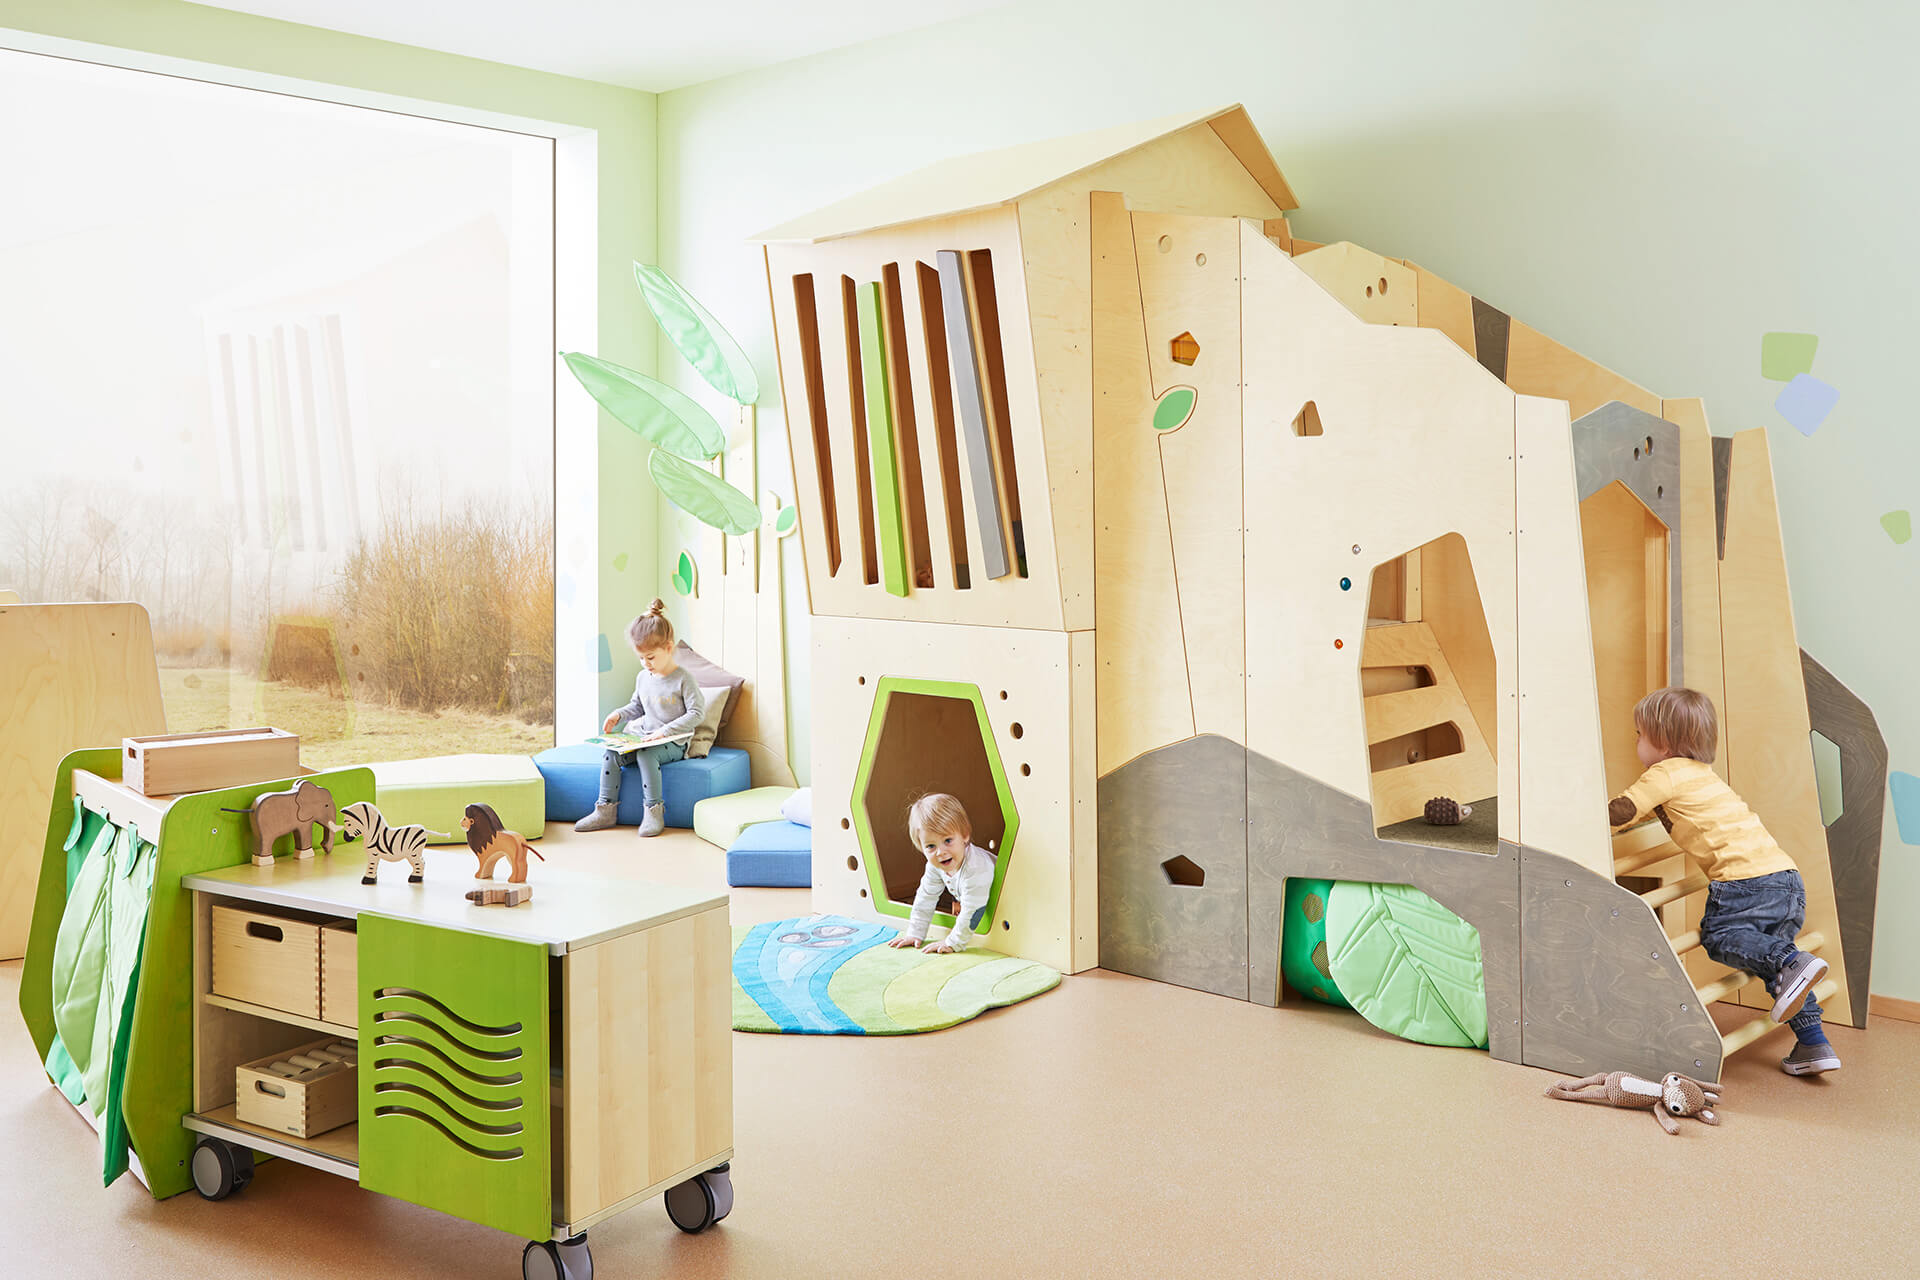 Spielraum | Spielen & Bewegung | kleine Kinder klettern in Spielhaus aus Holz, mit Leiter und Fenster, davor steht ein Materialschrank mit Spielzeug